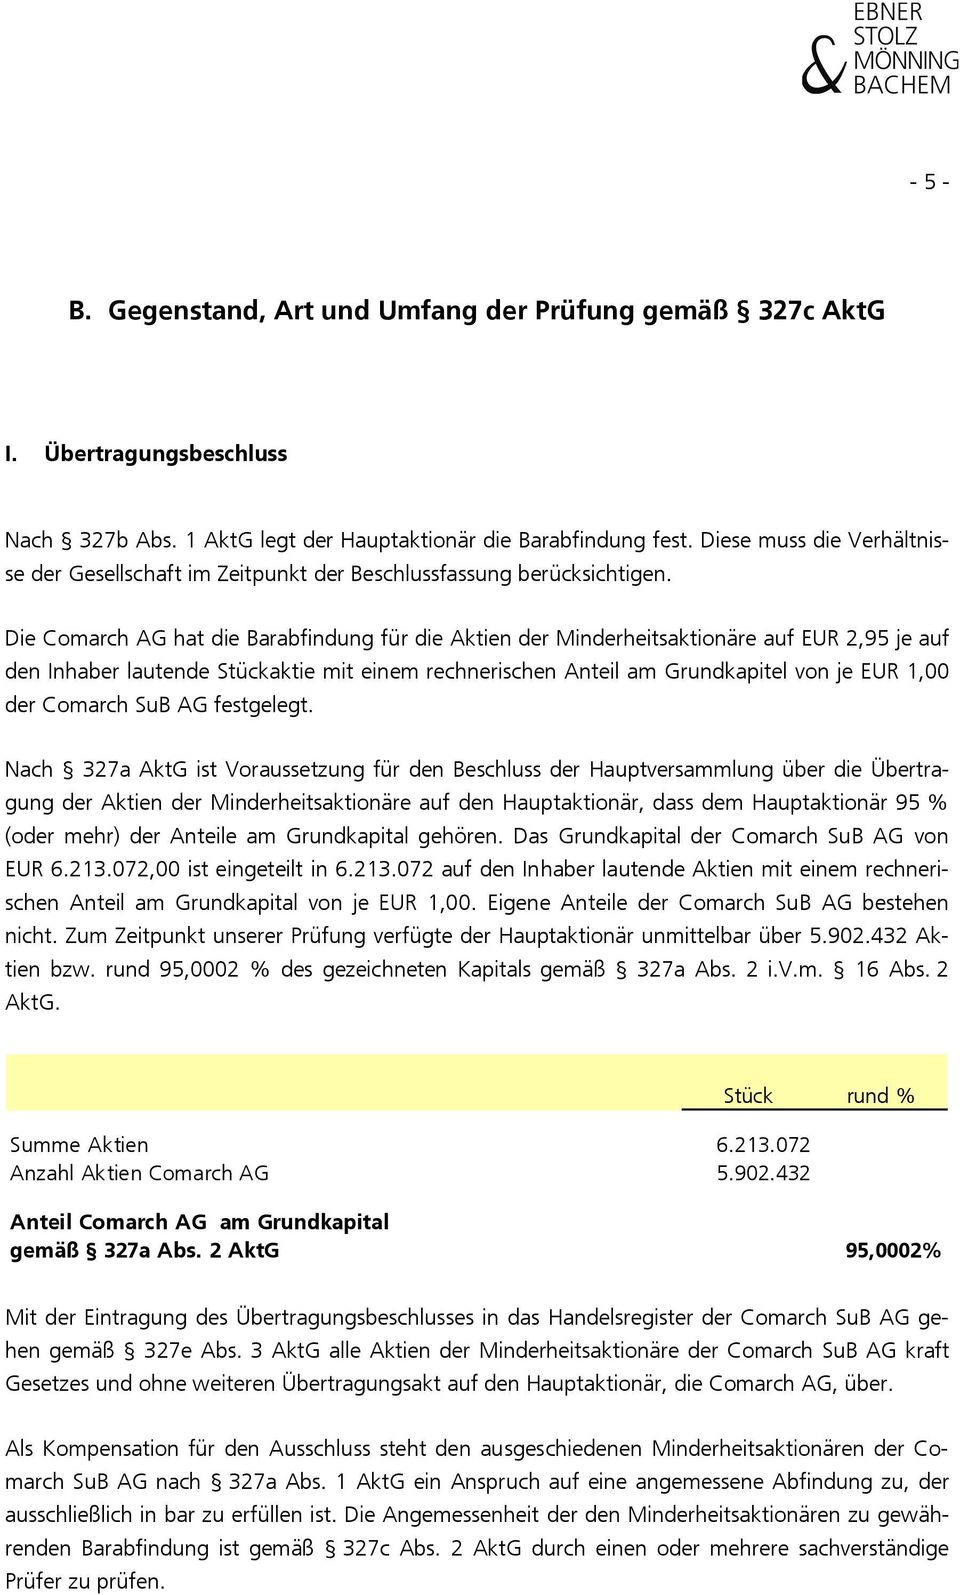 Die Comarch AG hat die Barabfindung für die Aktien der Minderheitsaktionäre auf EUR 2,95 je auf den Inhaber lautende Stückaktie mit einem rechnerischen Anteil am Grundkapitel von je EUR 1,00 der